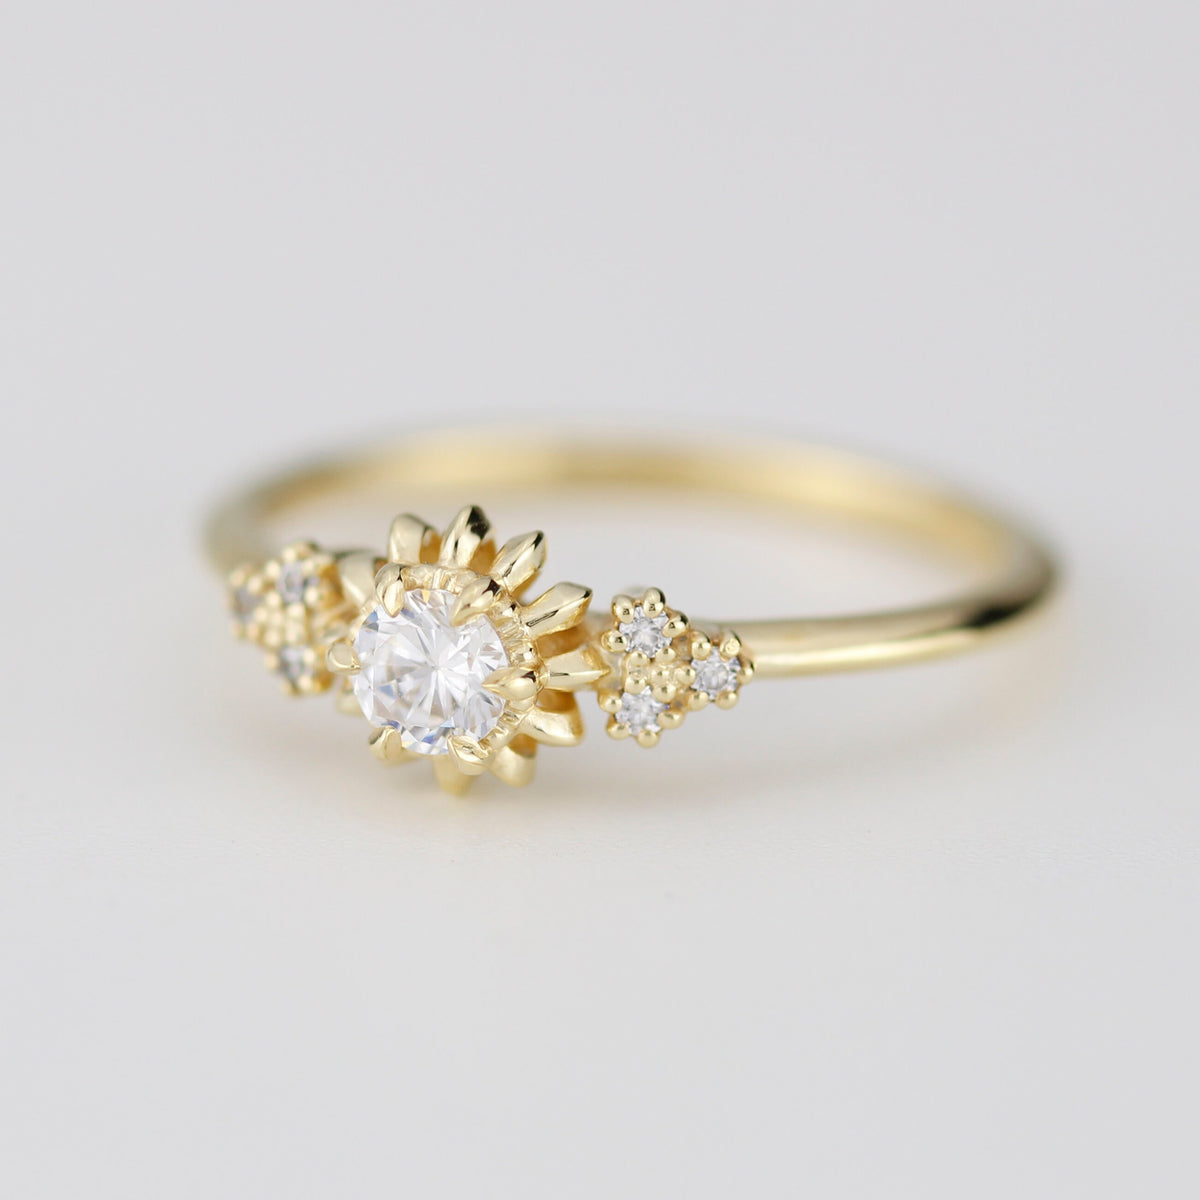 Sunflower ring diamond, seven stone engagement ring, vintage inspired ...